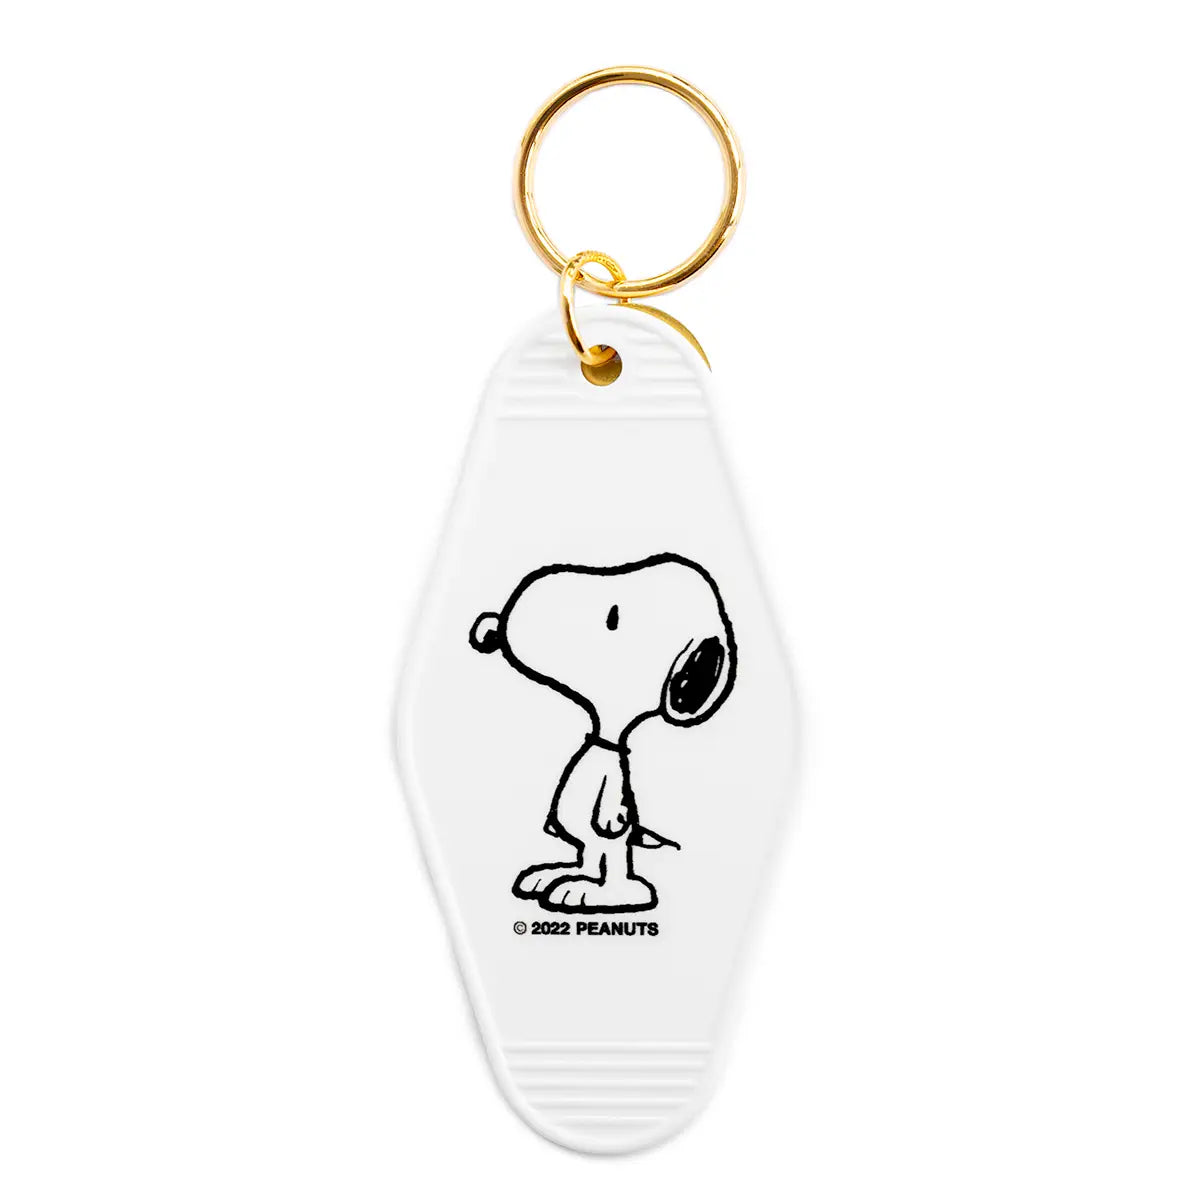 Classic Snoopy Key Tag - 3P4 x Peanuts